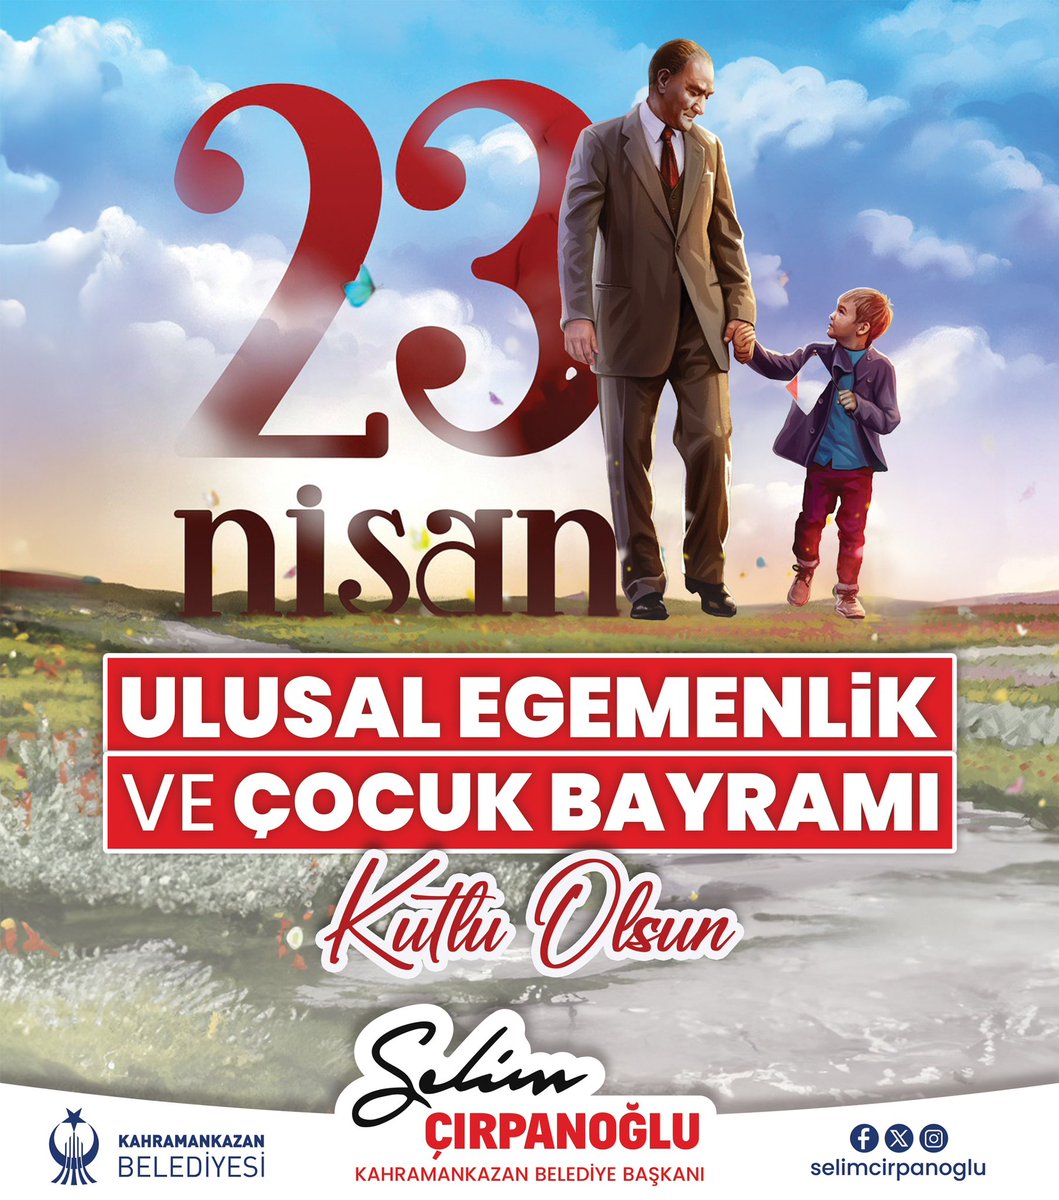 Gazi Mustafa Kemal Atatürk’ün çocuklara armağan ettiği #23Nisan Ulusal Egemenlik ve Çocuk Bayramı kutlu olsun! 🇹🇷🇹🇷 @selimcirpanoglu